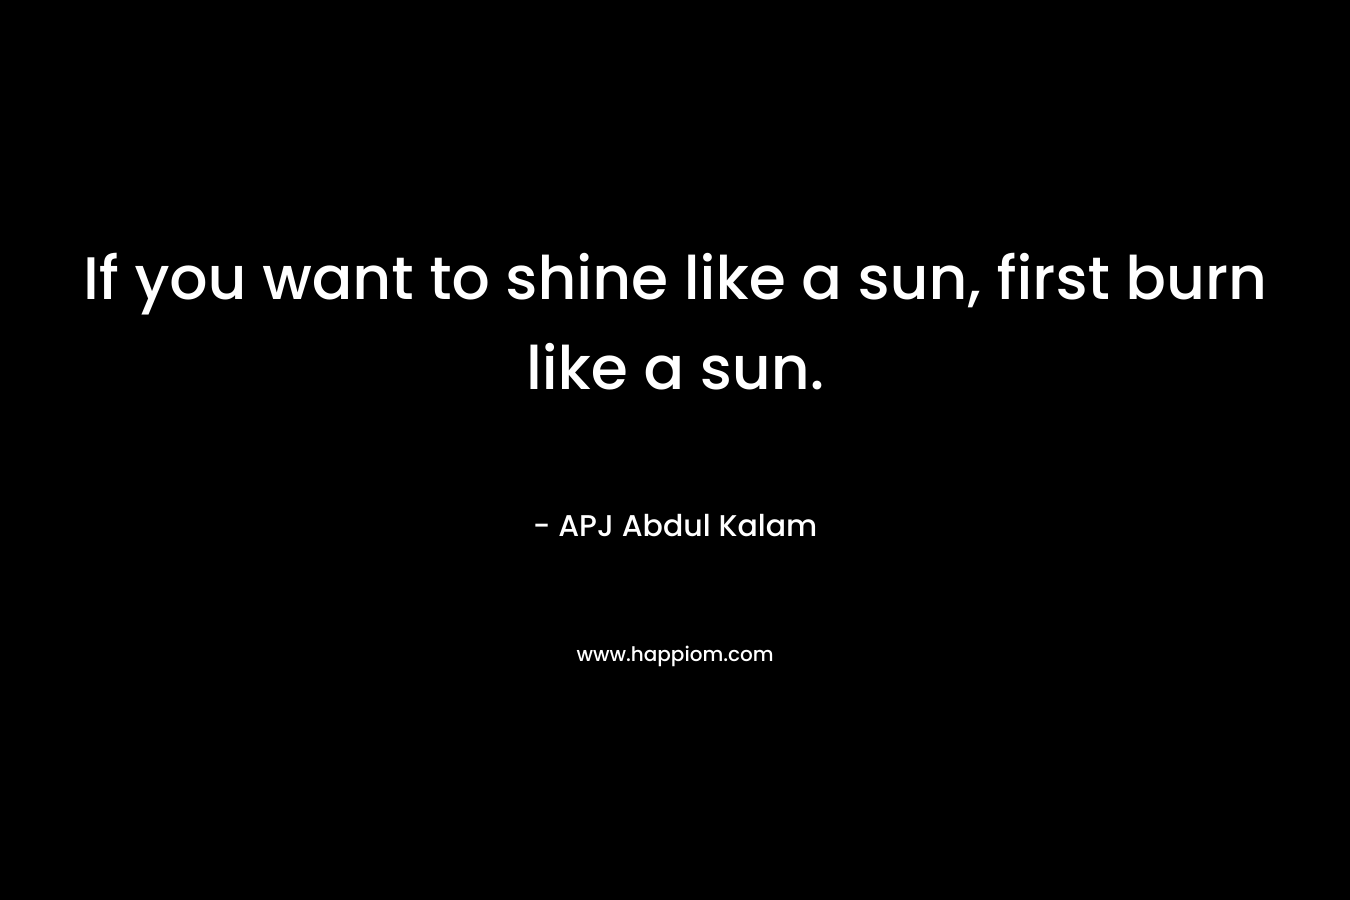 If you want to shine like a sun, first burn like a sun. – APJ Abdul Kalam